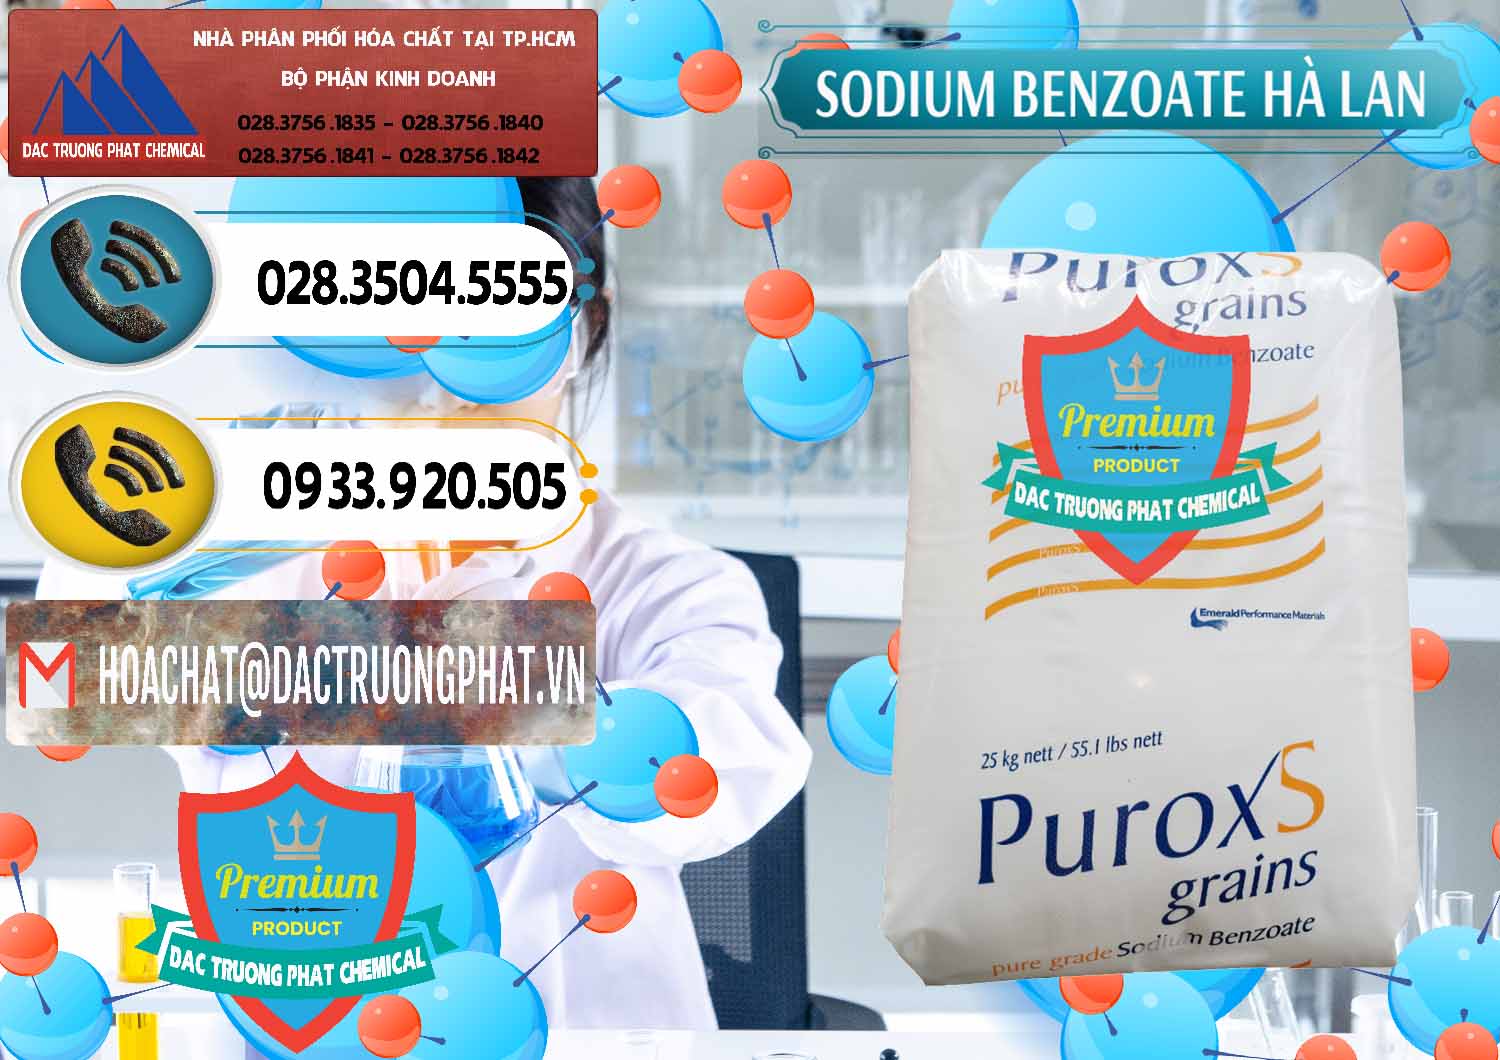 Đơn vị chuyên bán & cung ứng Sodium Benzoate - Mốc Bột Puroxs Hà Lan Netherlands - 0467 - Nơi nhập khẩu và phân phối hóa chất tại TP.HCM - hoachatdetnhuom.vn